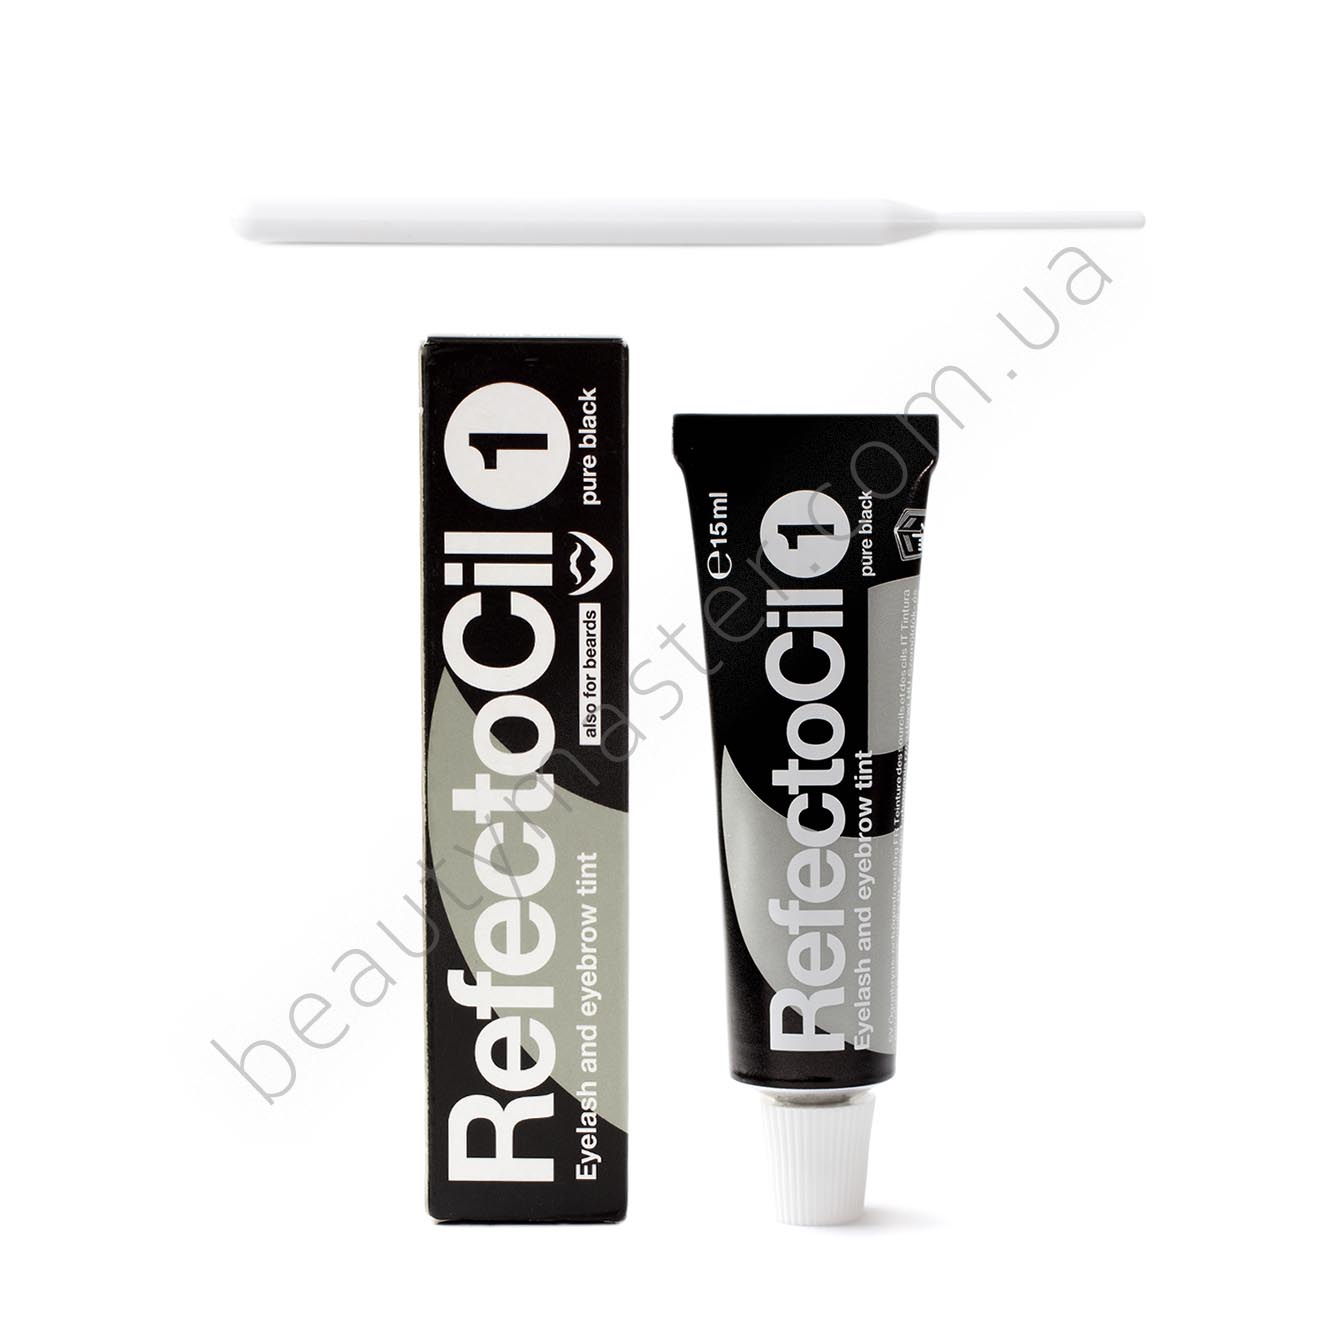 RefectoCil краска 1 pure black 15ml